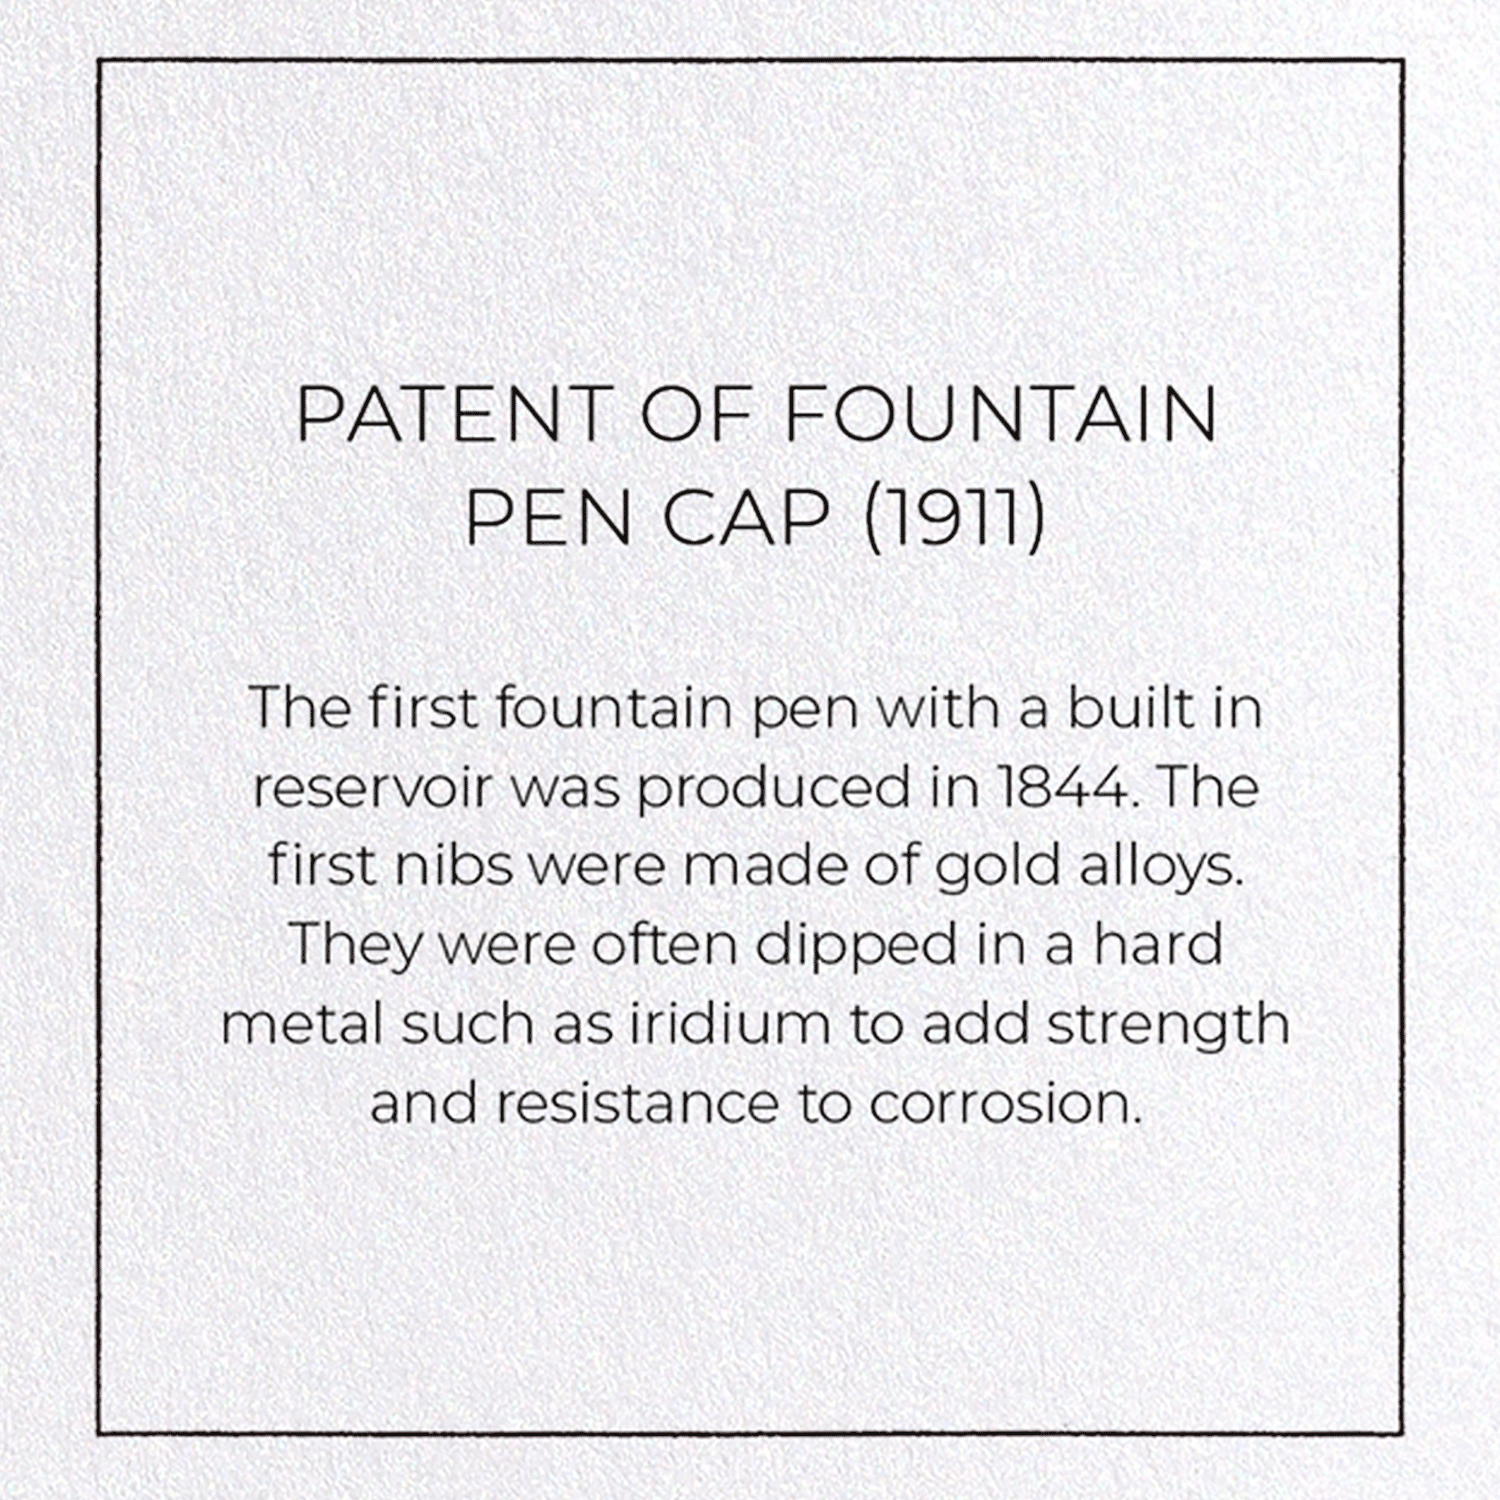 PATENT OF FOUNTAIN PEN CAP (1911)